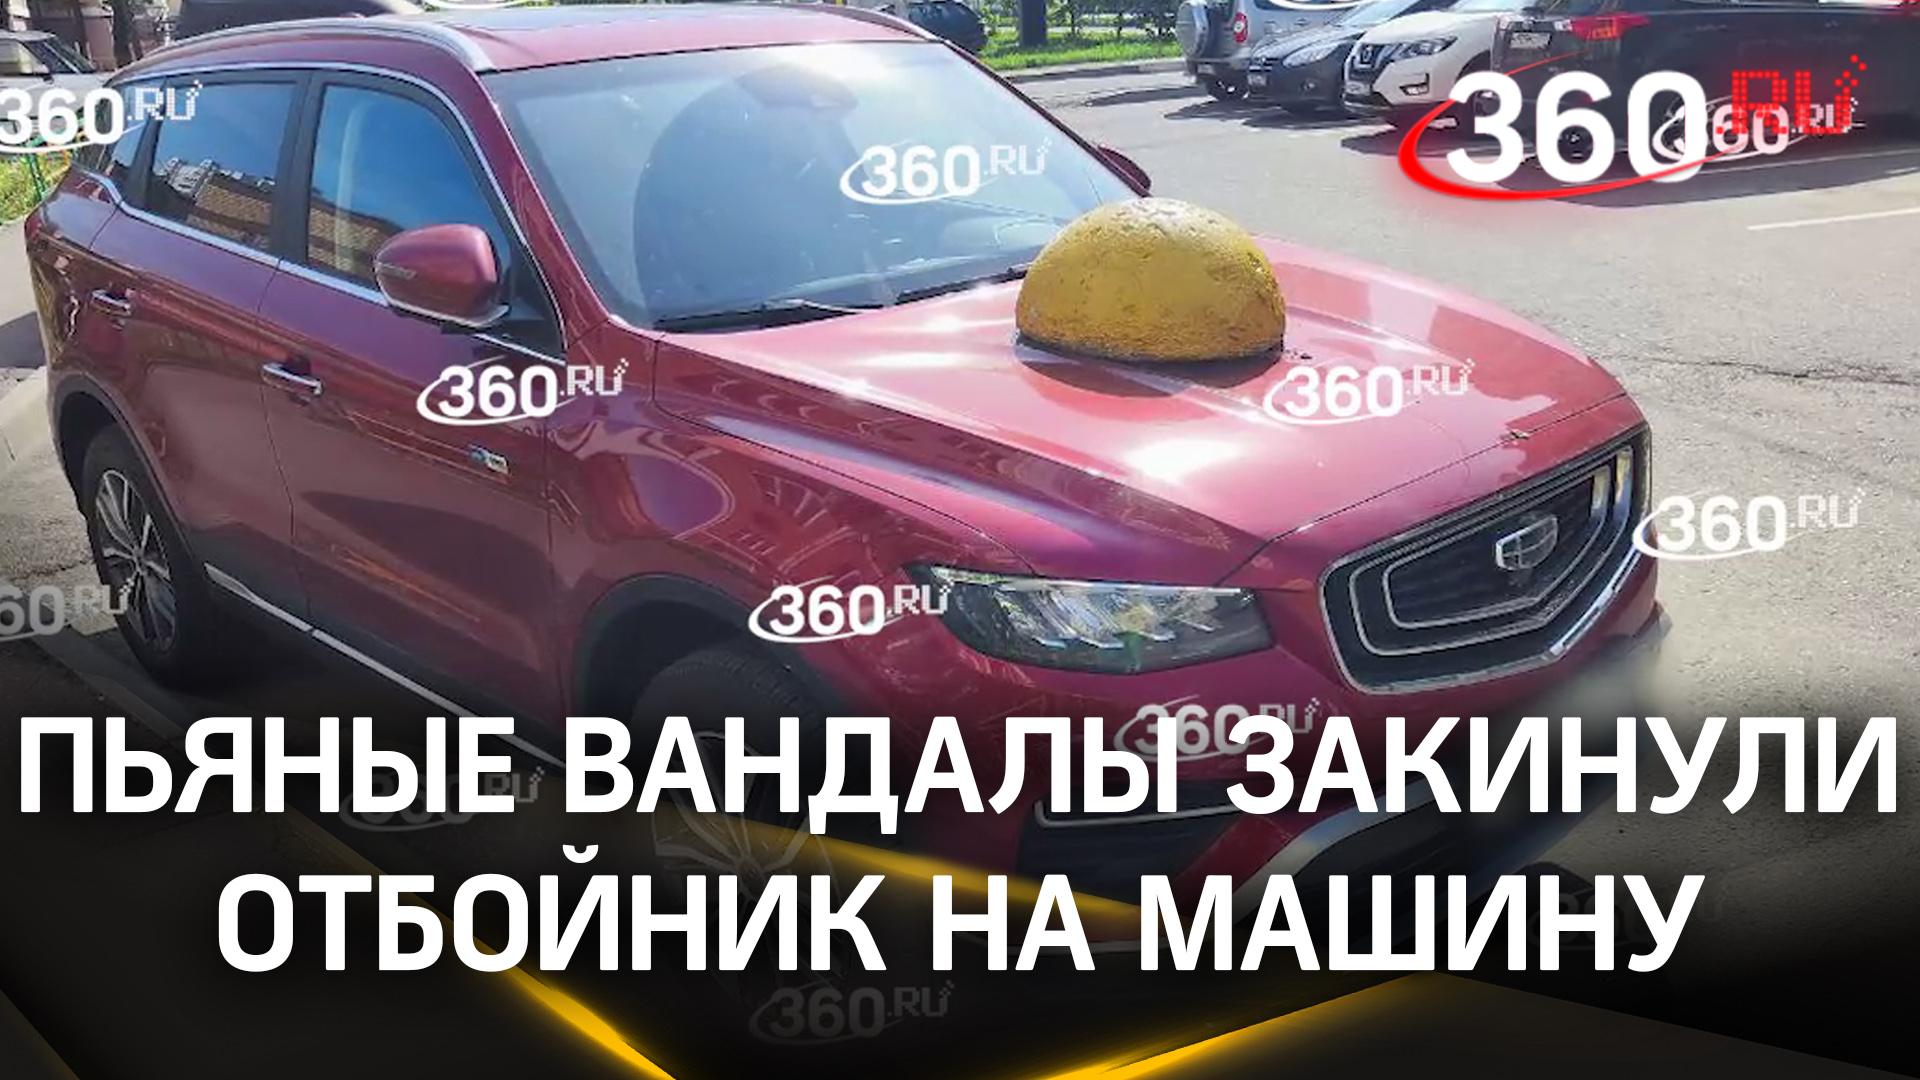 Видео: бетонный отбойник закинули на машину. Пьяные вандалы в Подольске